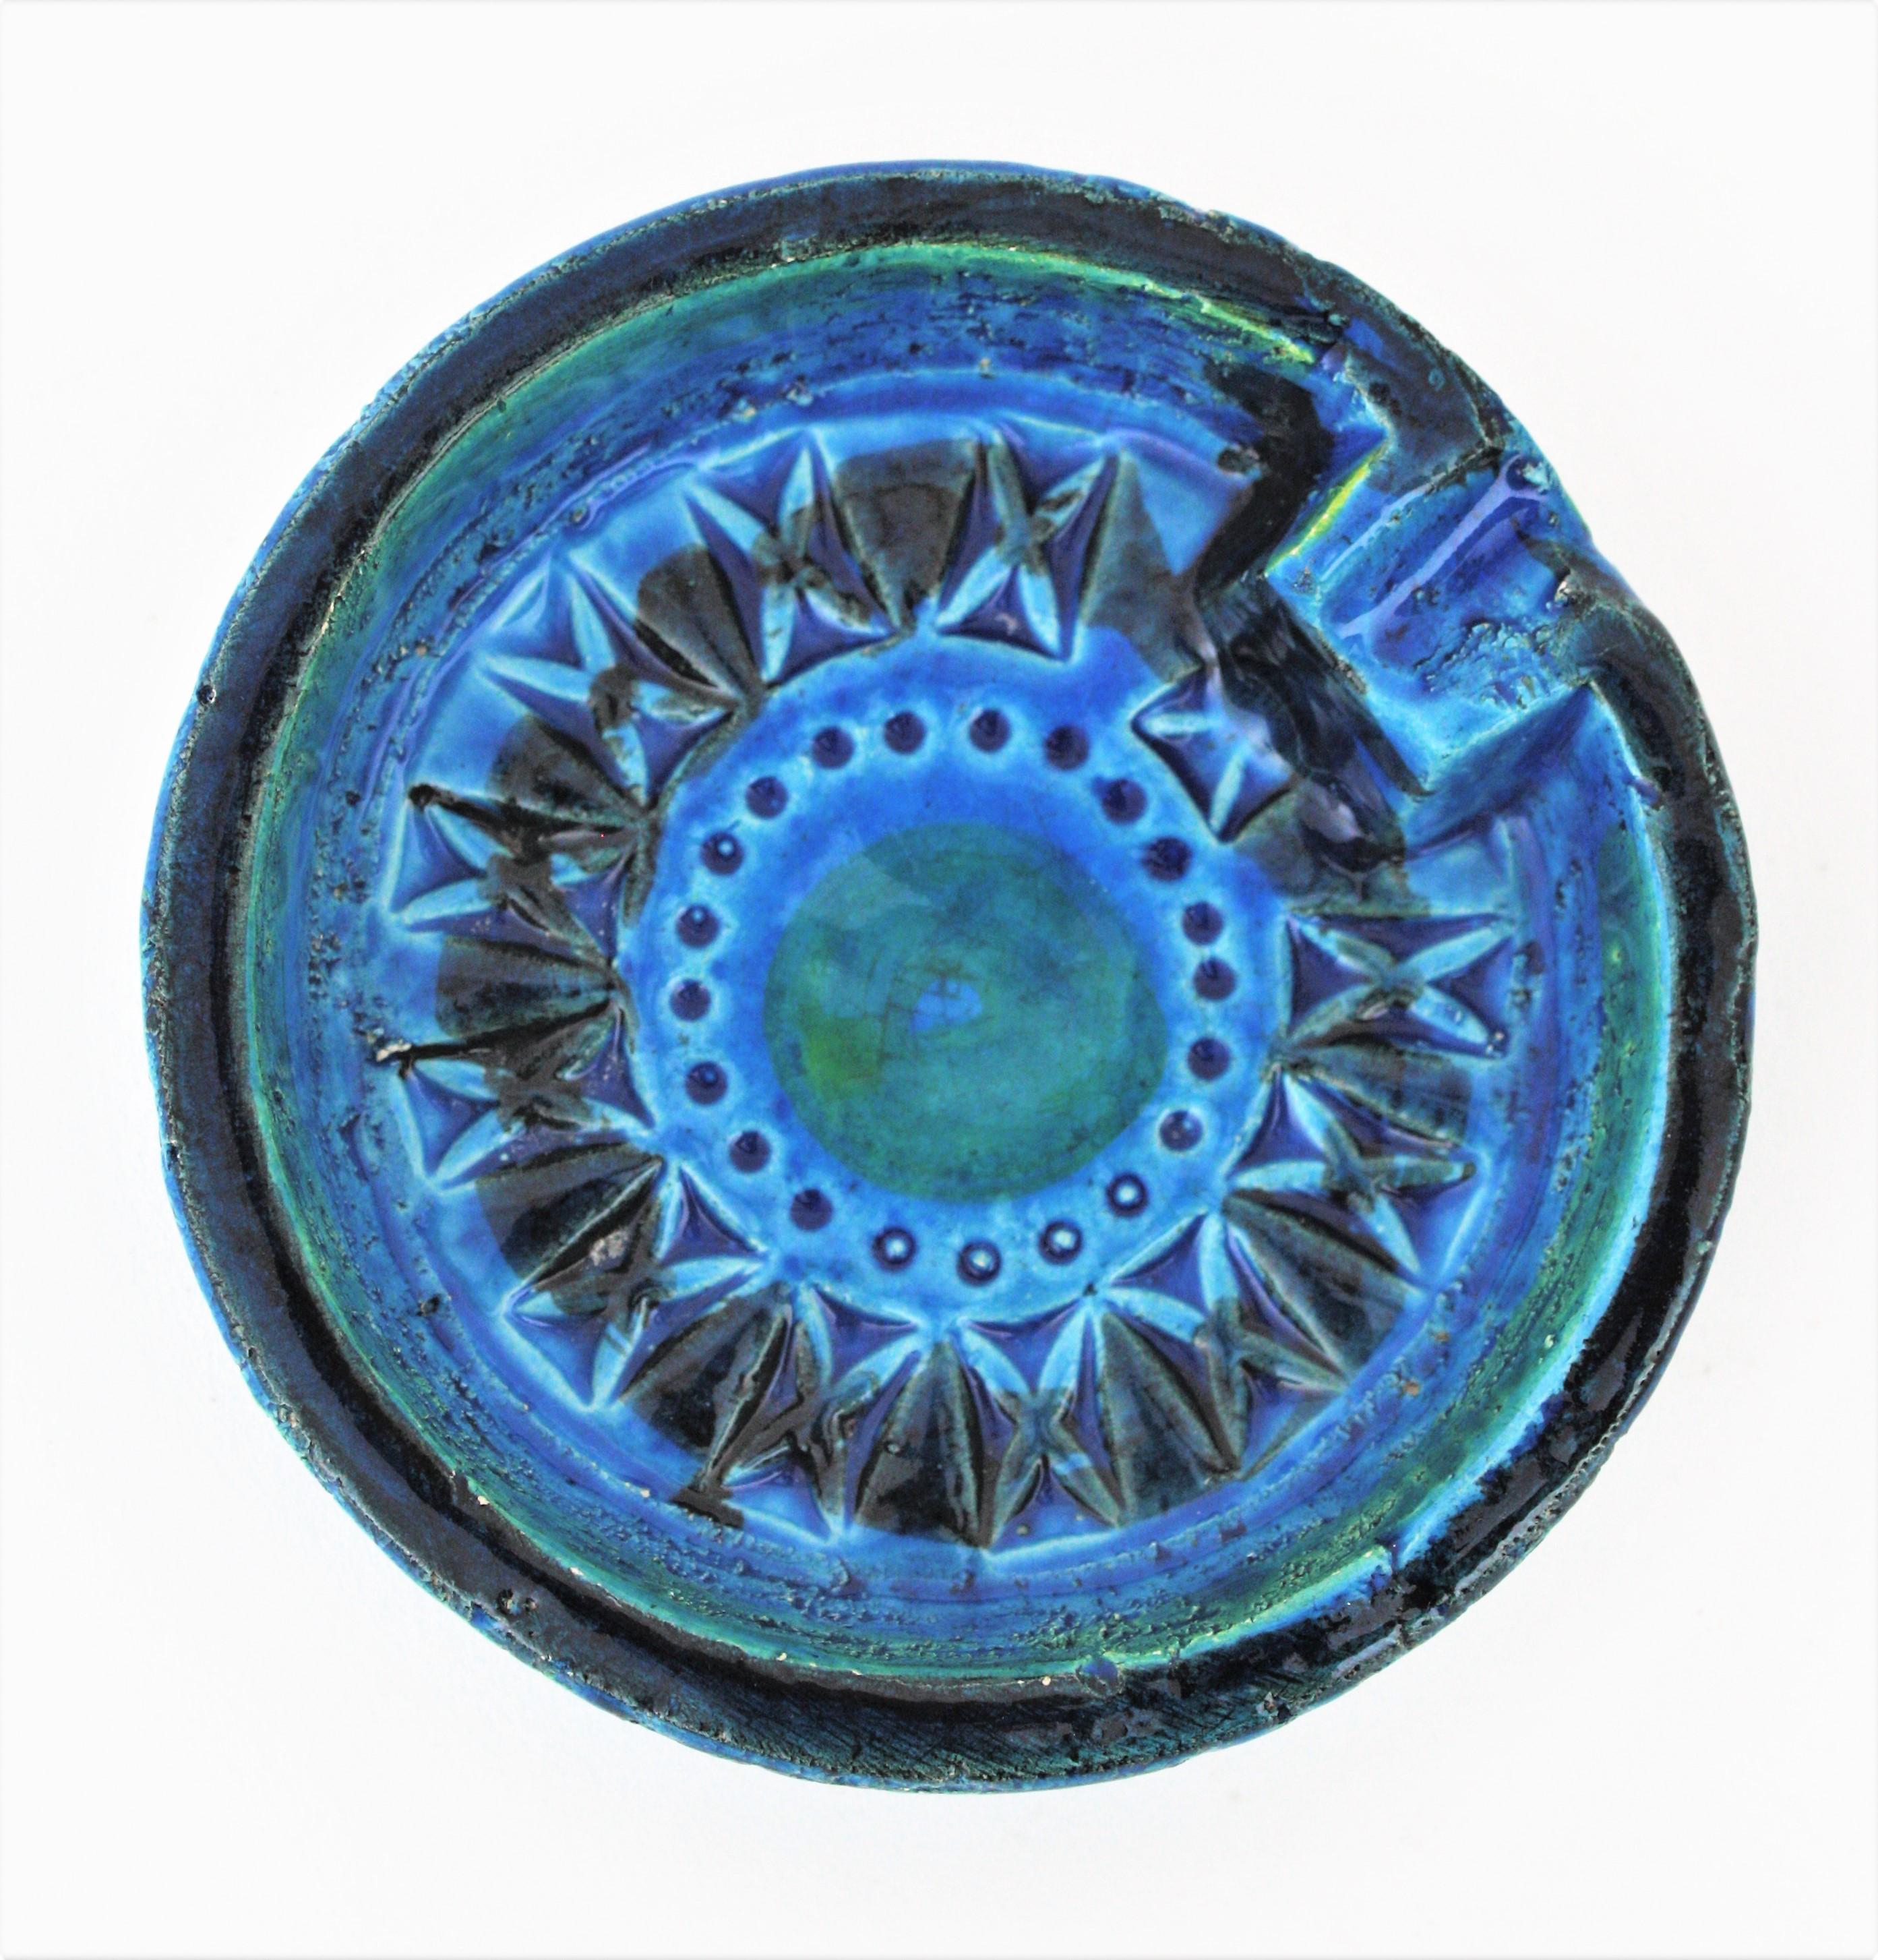 20th Century Small Rimini Blue Glazed Ceramic Circular Ashtray by Aldo Londi for Bitossi